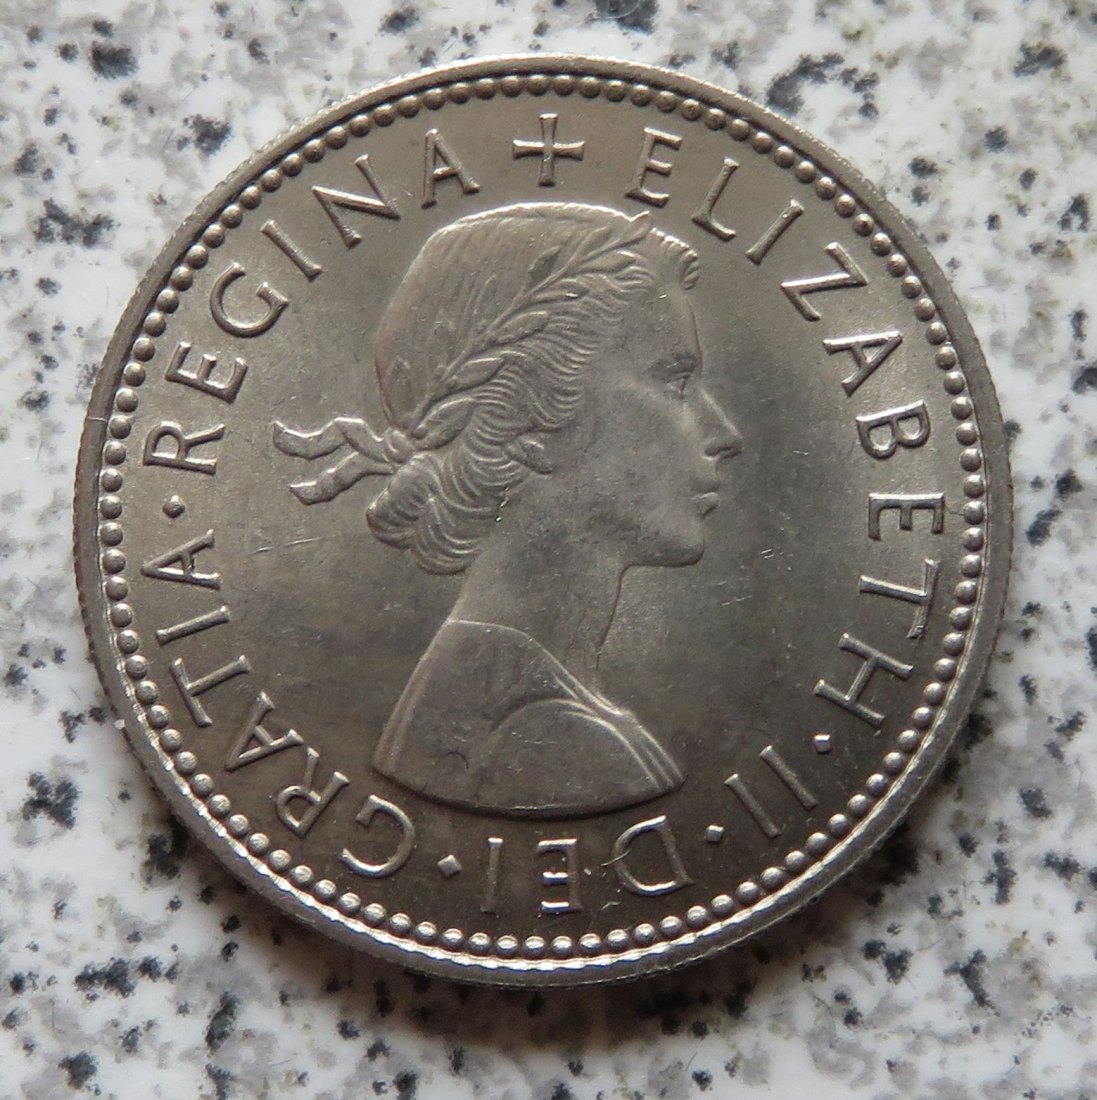  Großbritannien 1 Shilling 1964, Englisch, Erhaltung   